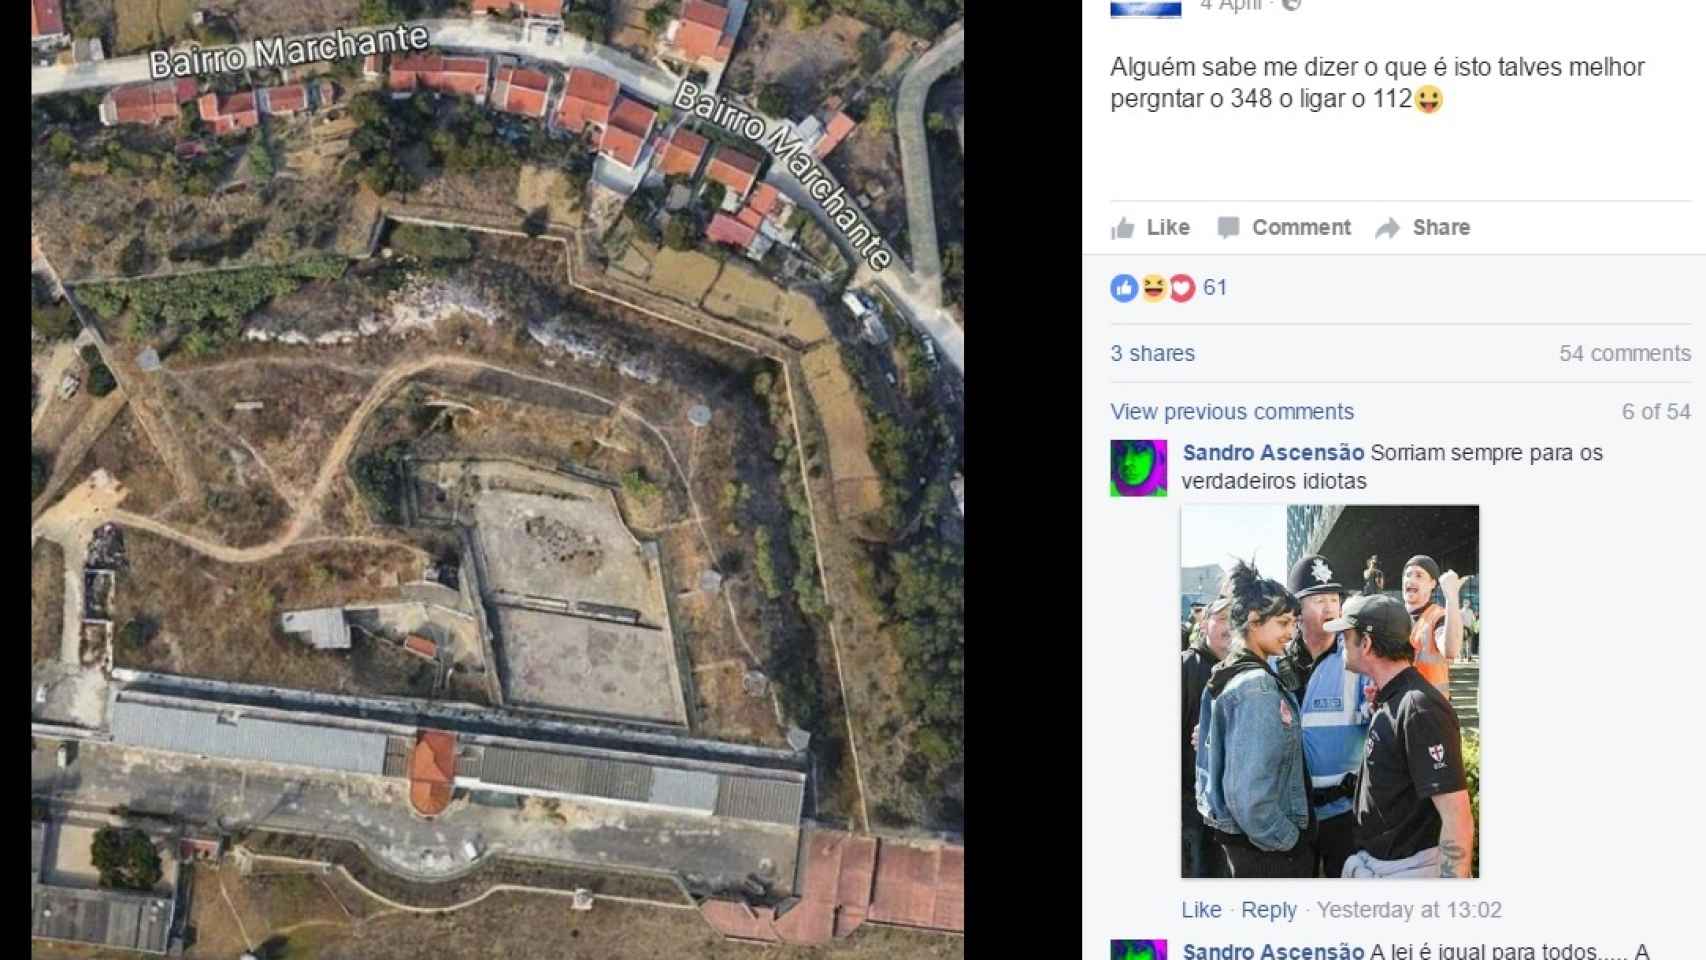 Post de Facebook en el que 'Jeki' se mofa de las autoridades y pregunta si alguien sabe qué es el sitio que aparece en el mapa.